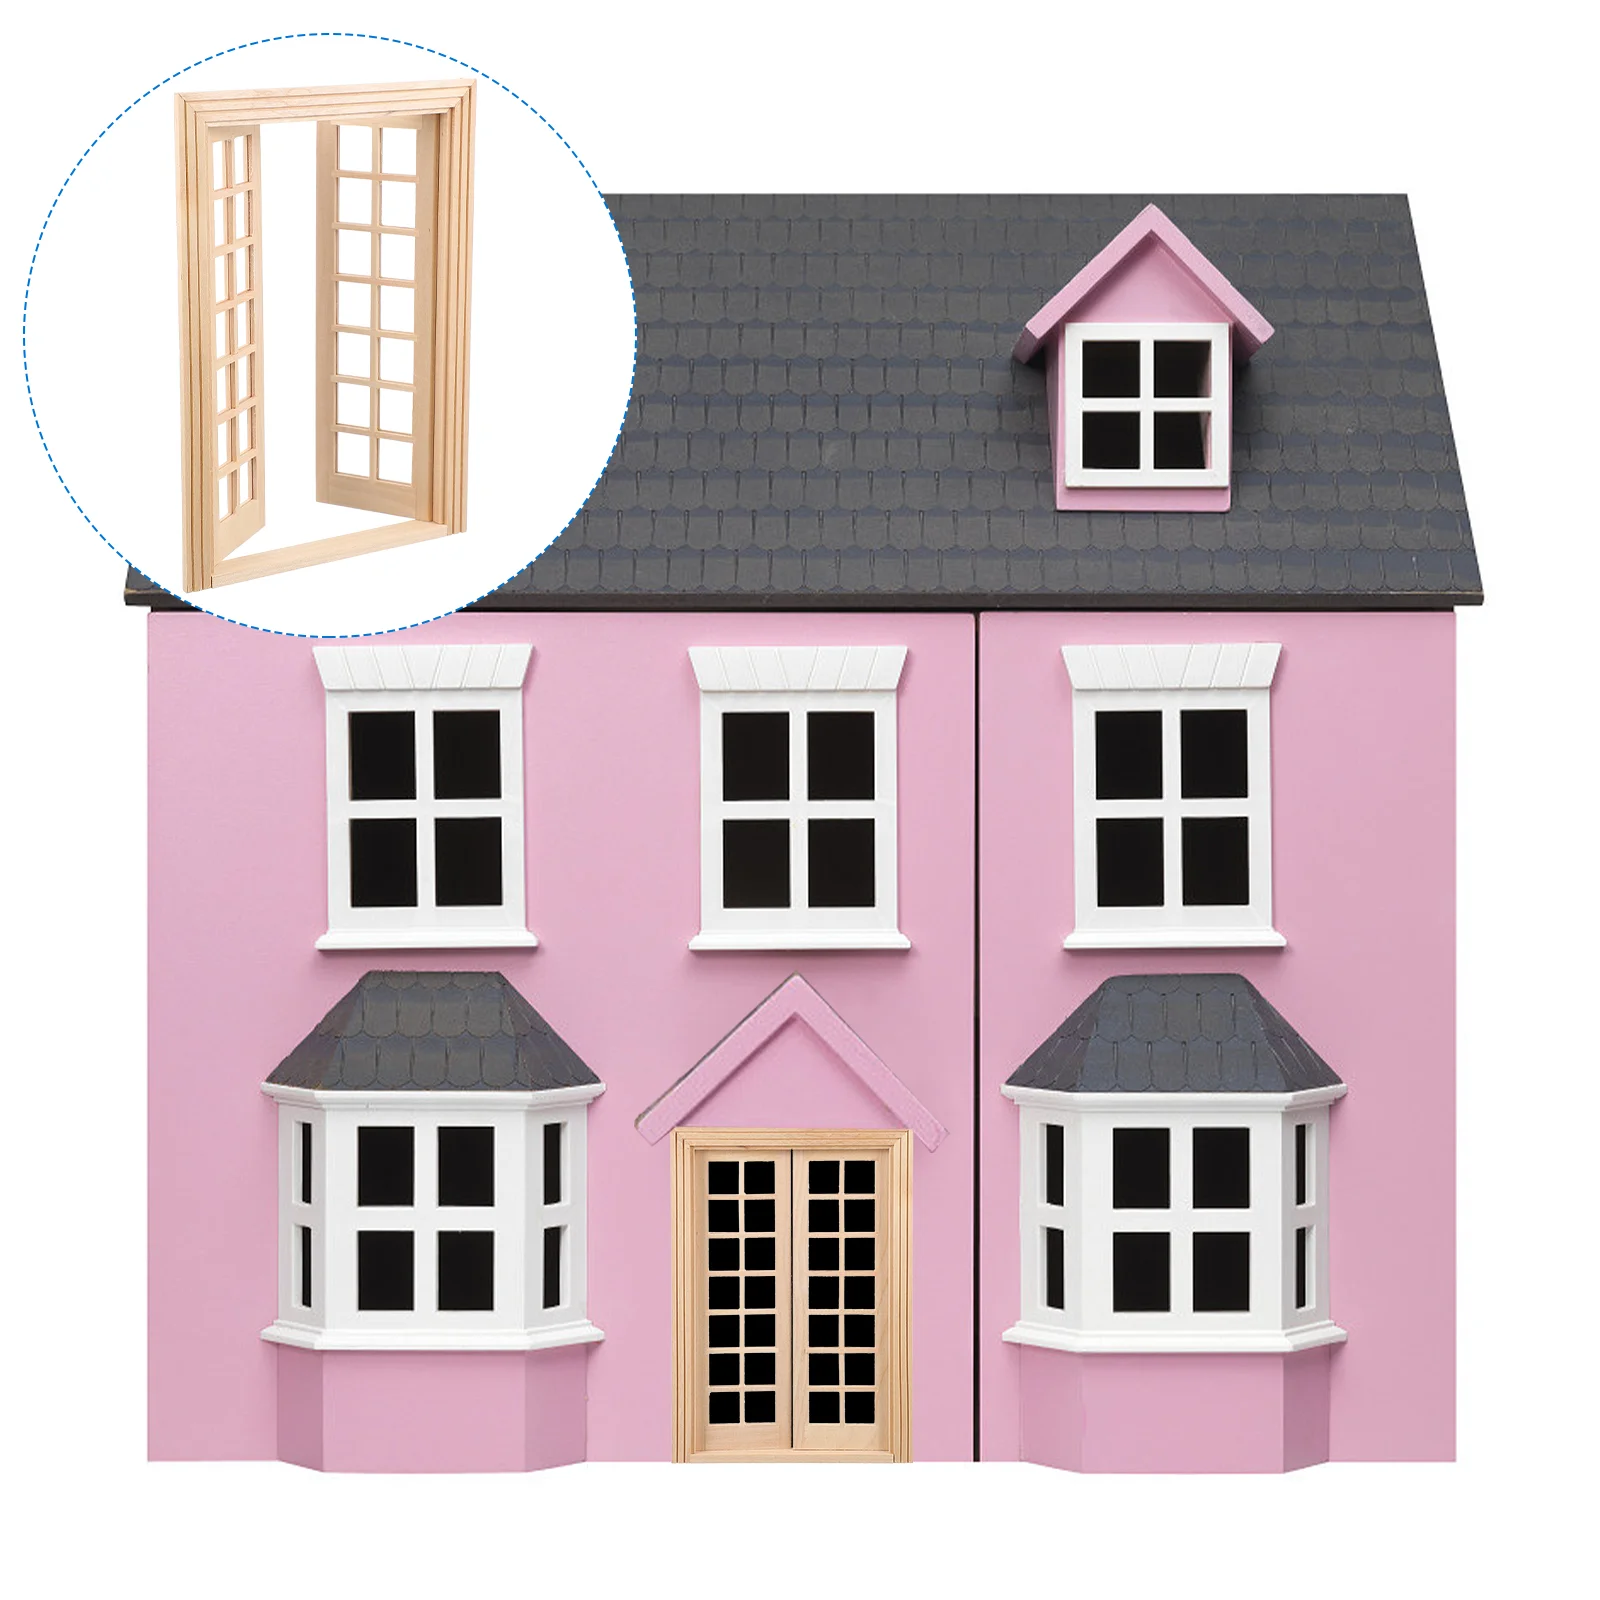 

Модель двери окна фото реквизит мини декор мебели украшение деревянная DIY Миниатюрная игрушка